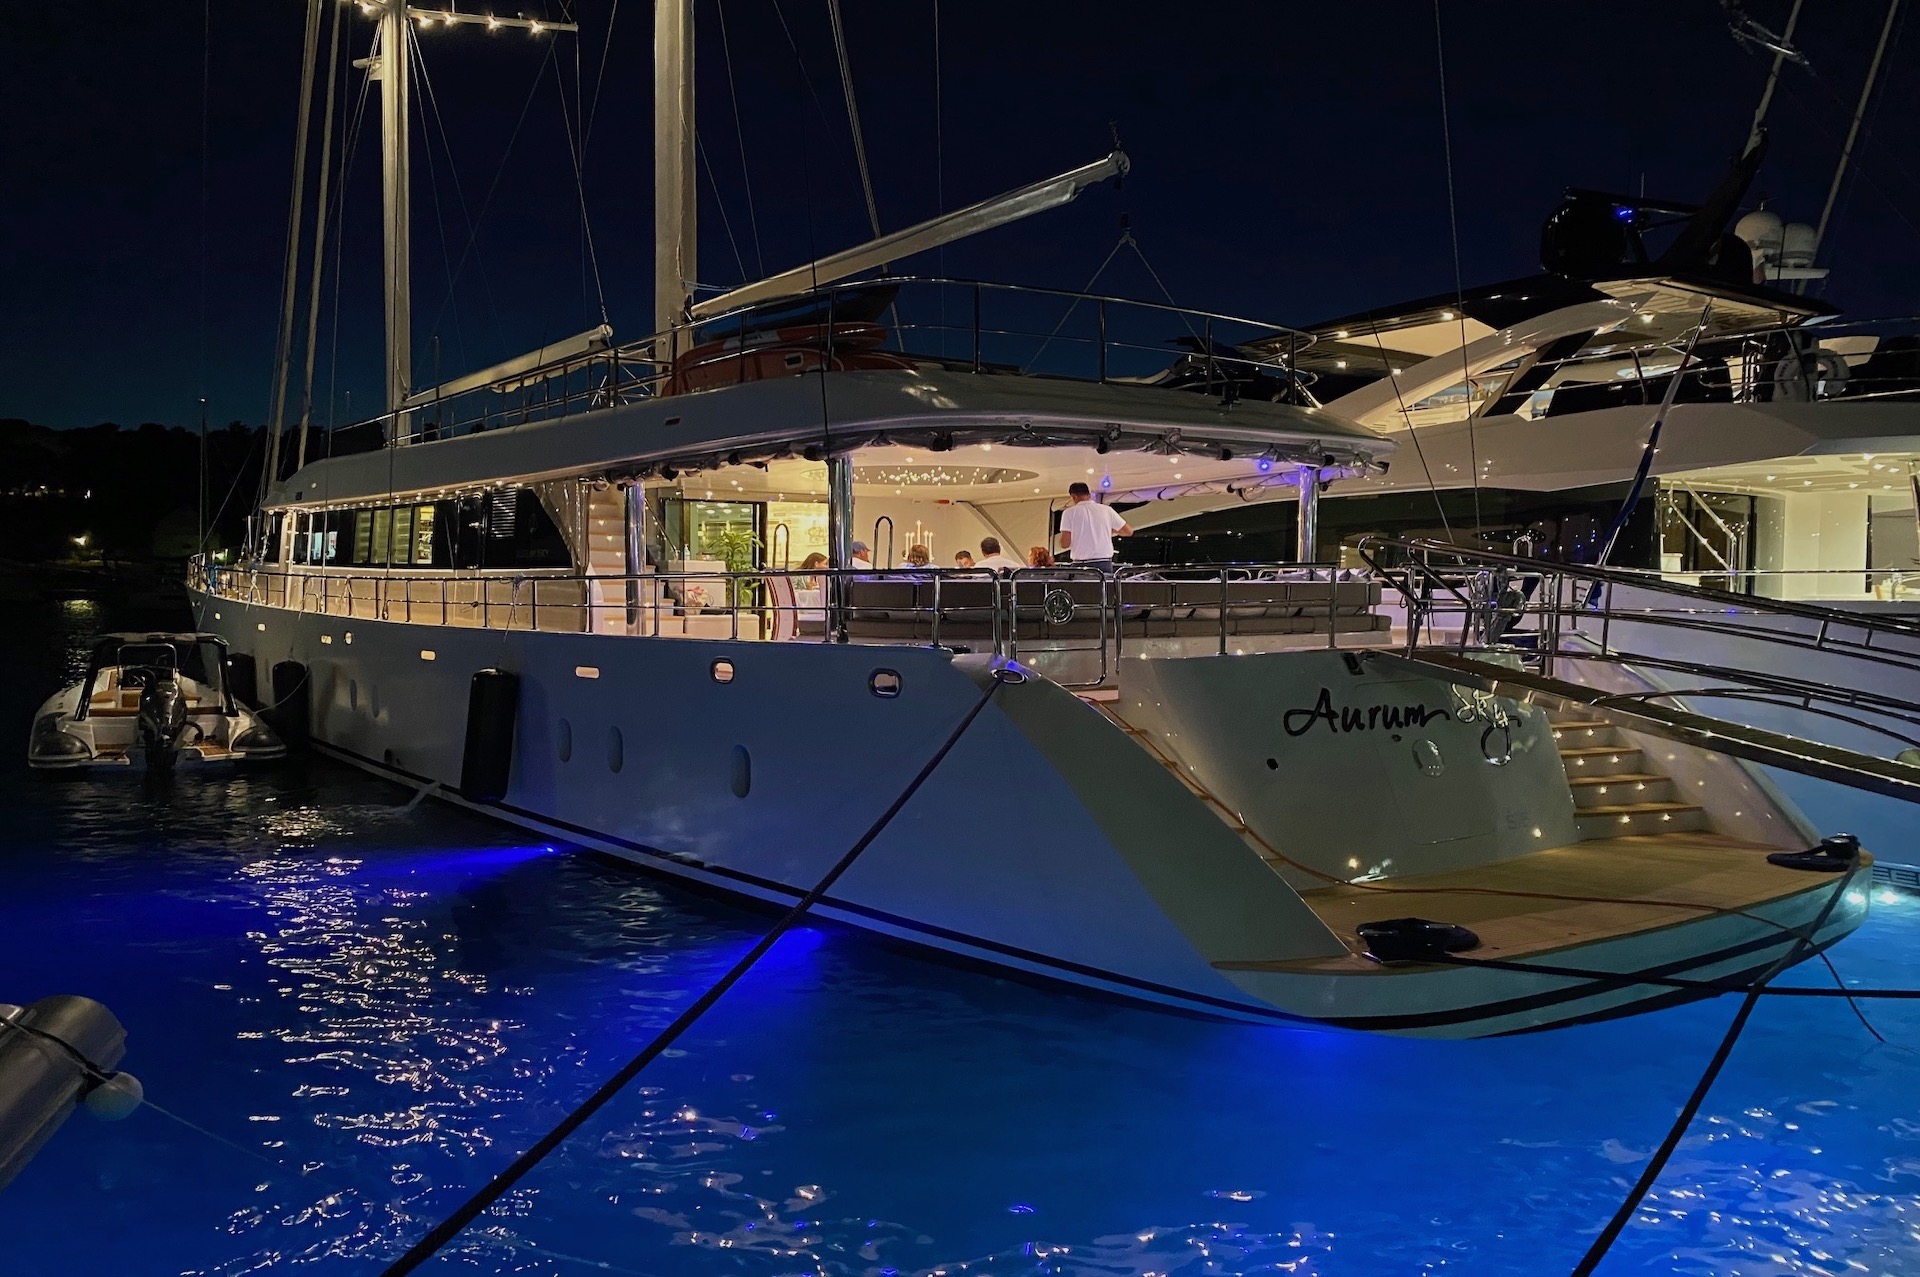 yacht charter Aurum Sky night